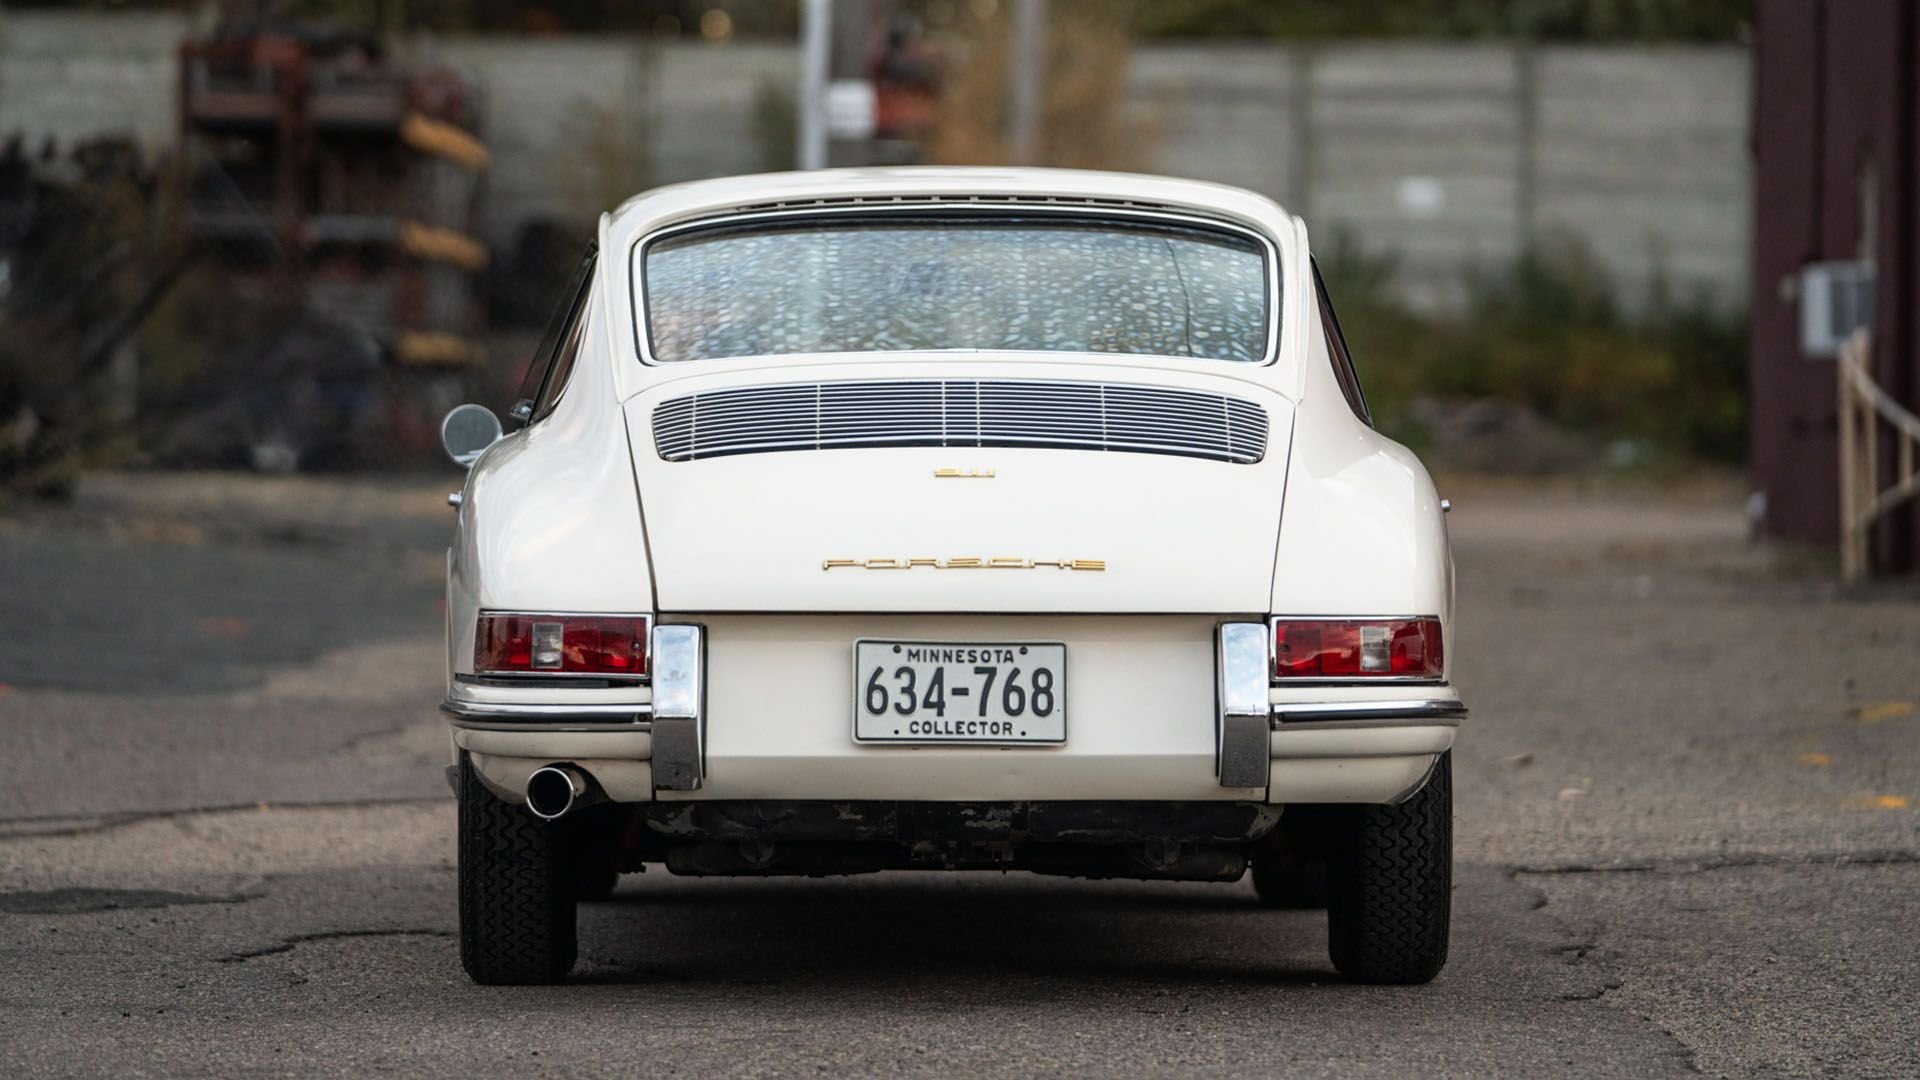 For Sale 1965 Porsche 911